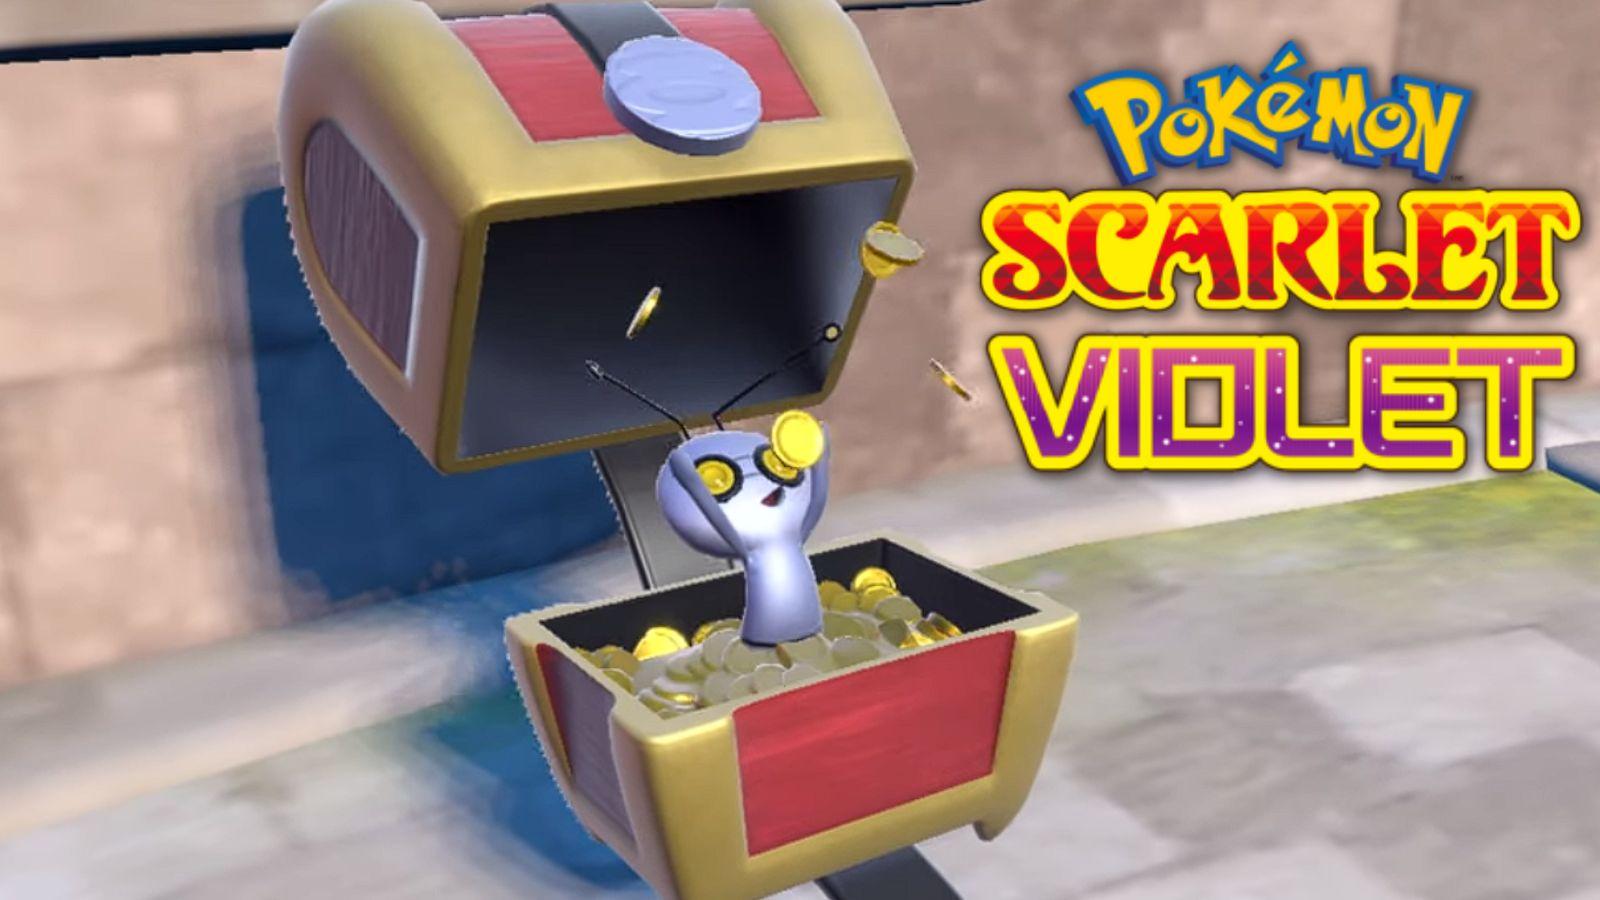 Pokémon Scarlet/Violet (Switch) revela novo Pokémon Gimmighoul